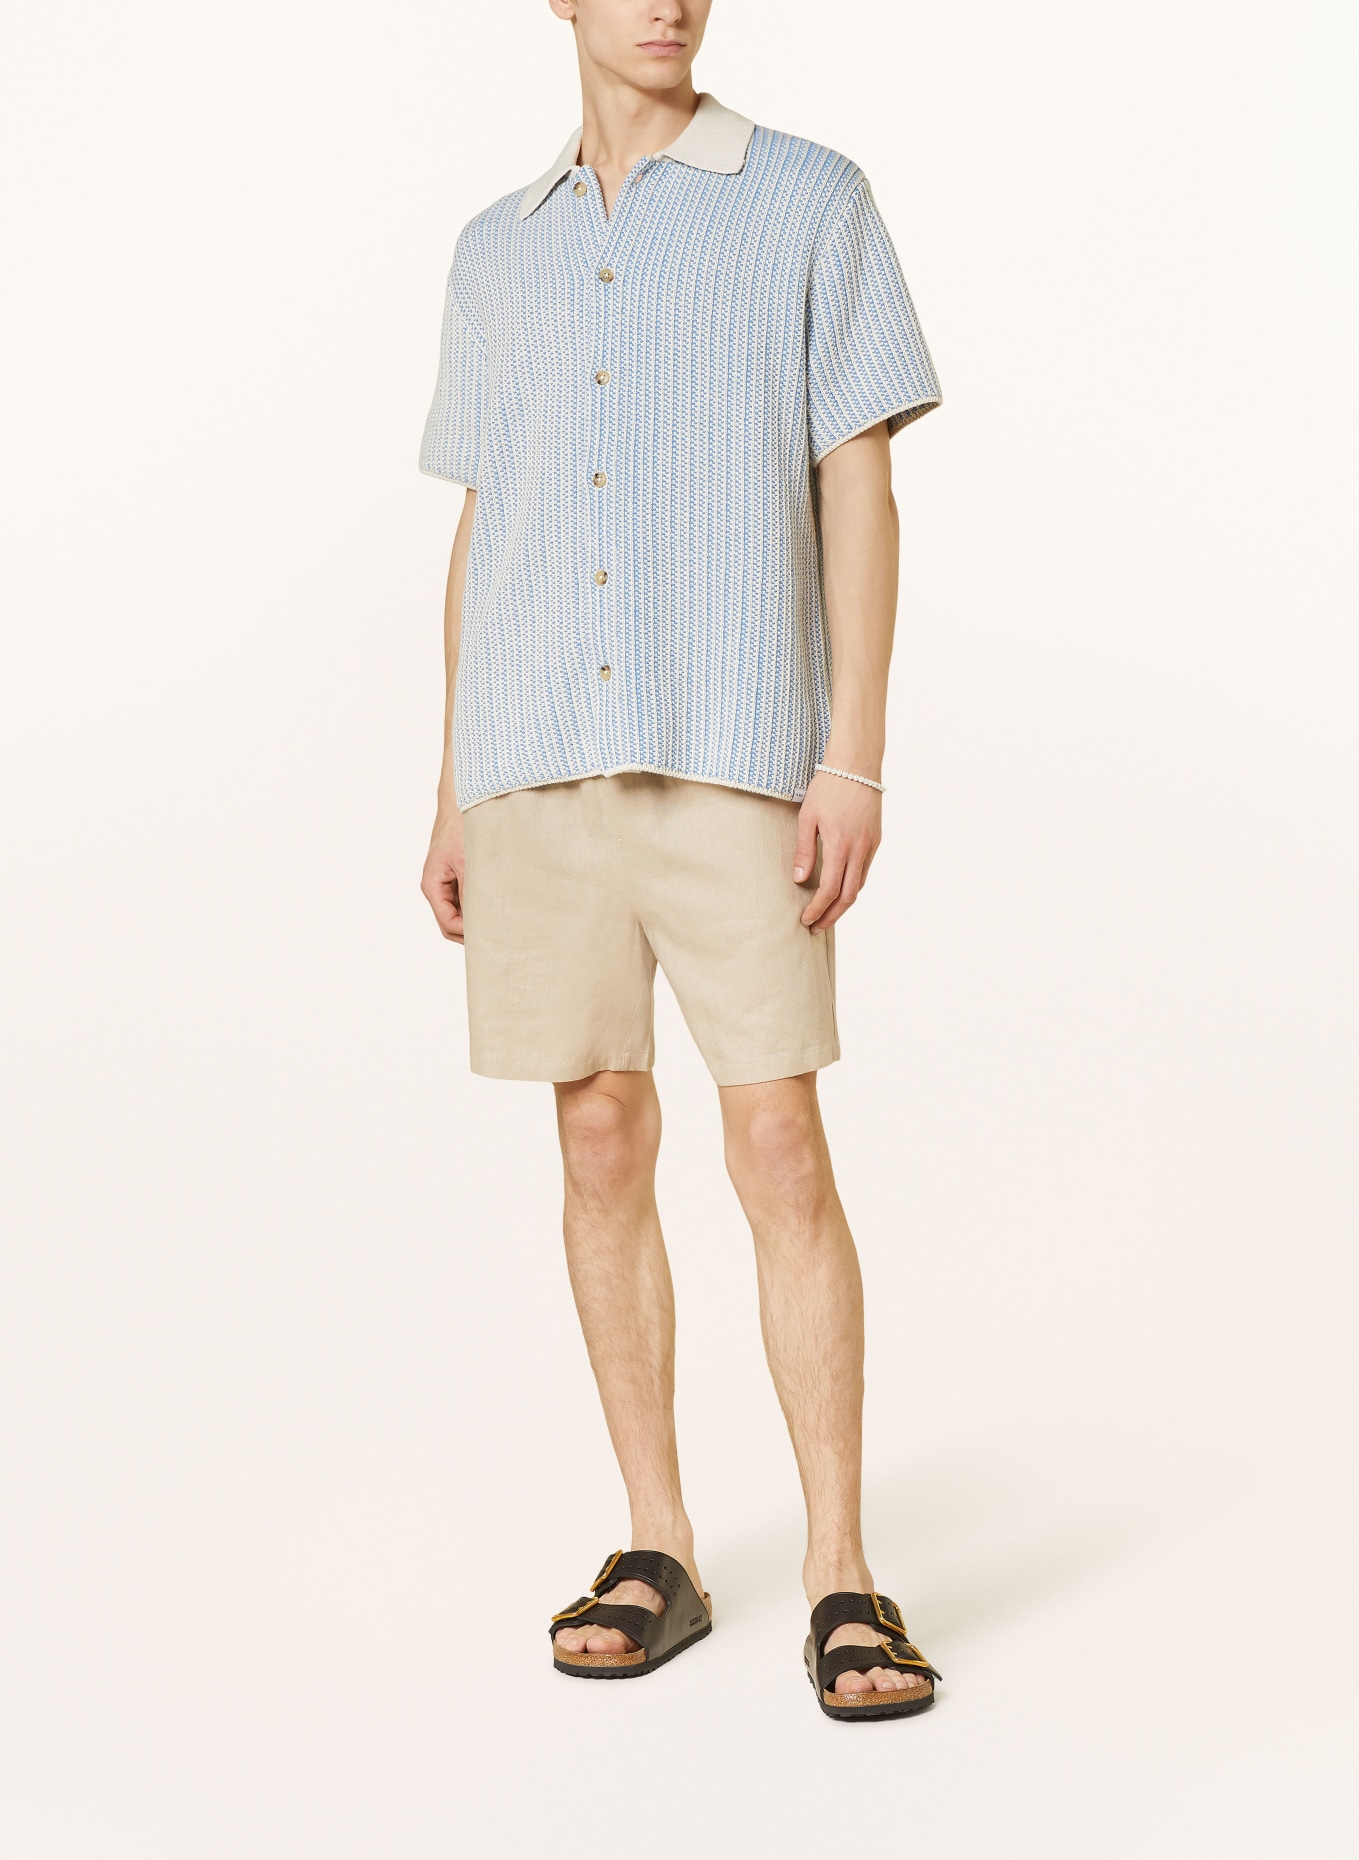 LES DEUX Short sleeve shirt comfort fit, Color: BLUE/ ECRU (Image 2)